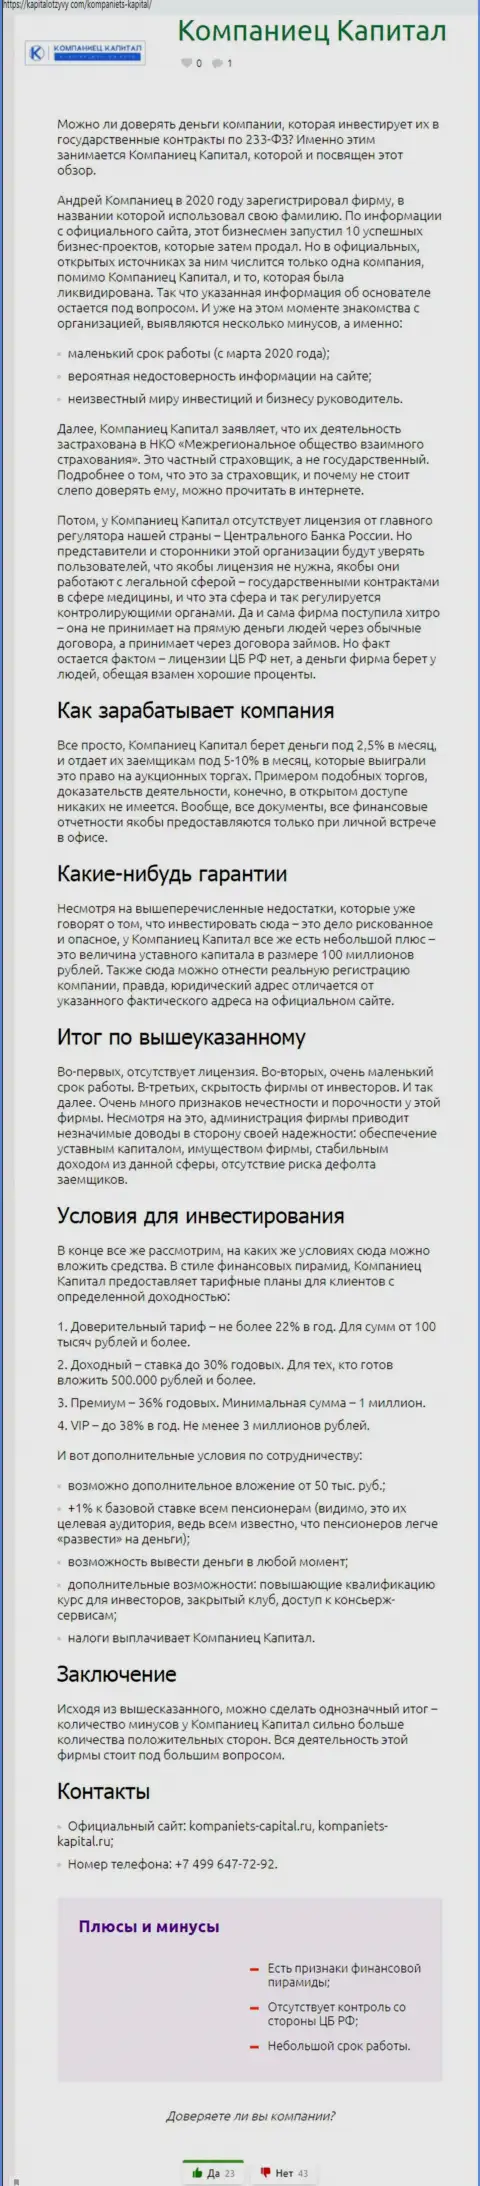 Автор обзорной статьи советует не отправлять деньги в лохотрон Kompaniets-Capital Ru - ЗАБЕРУТ !!!